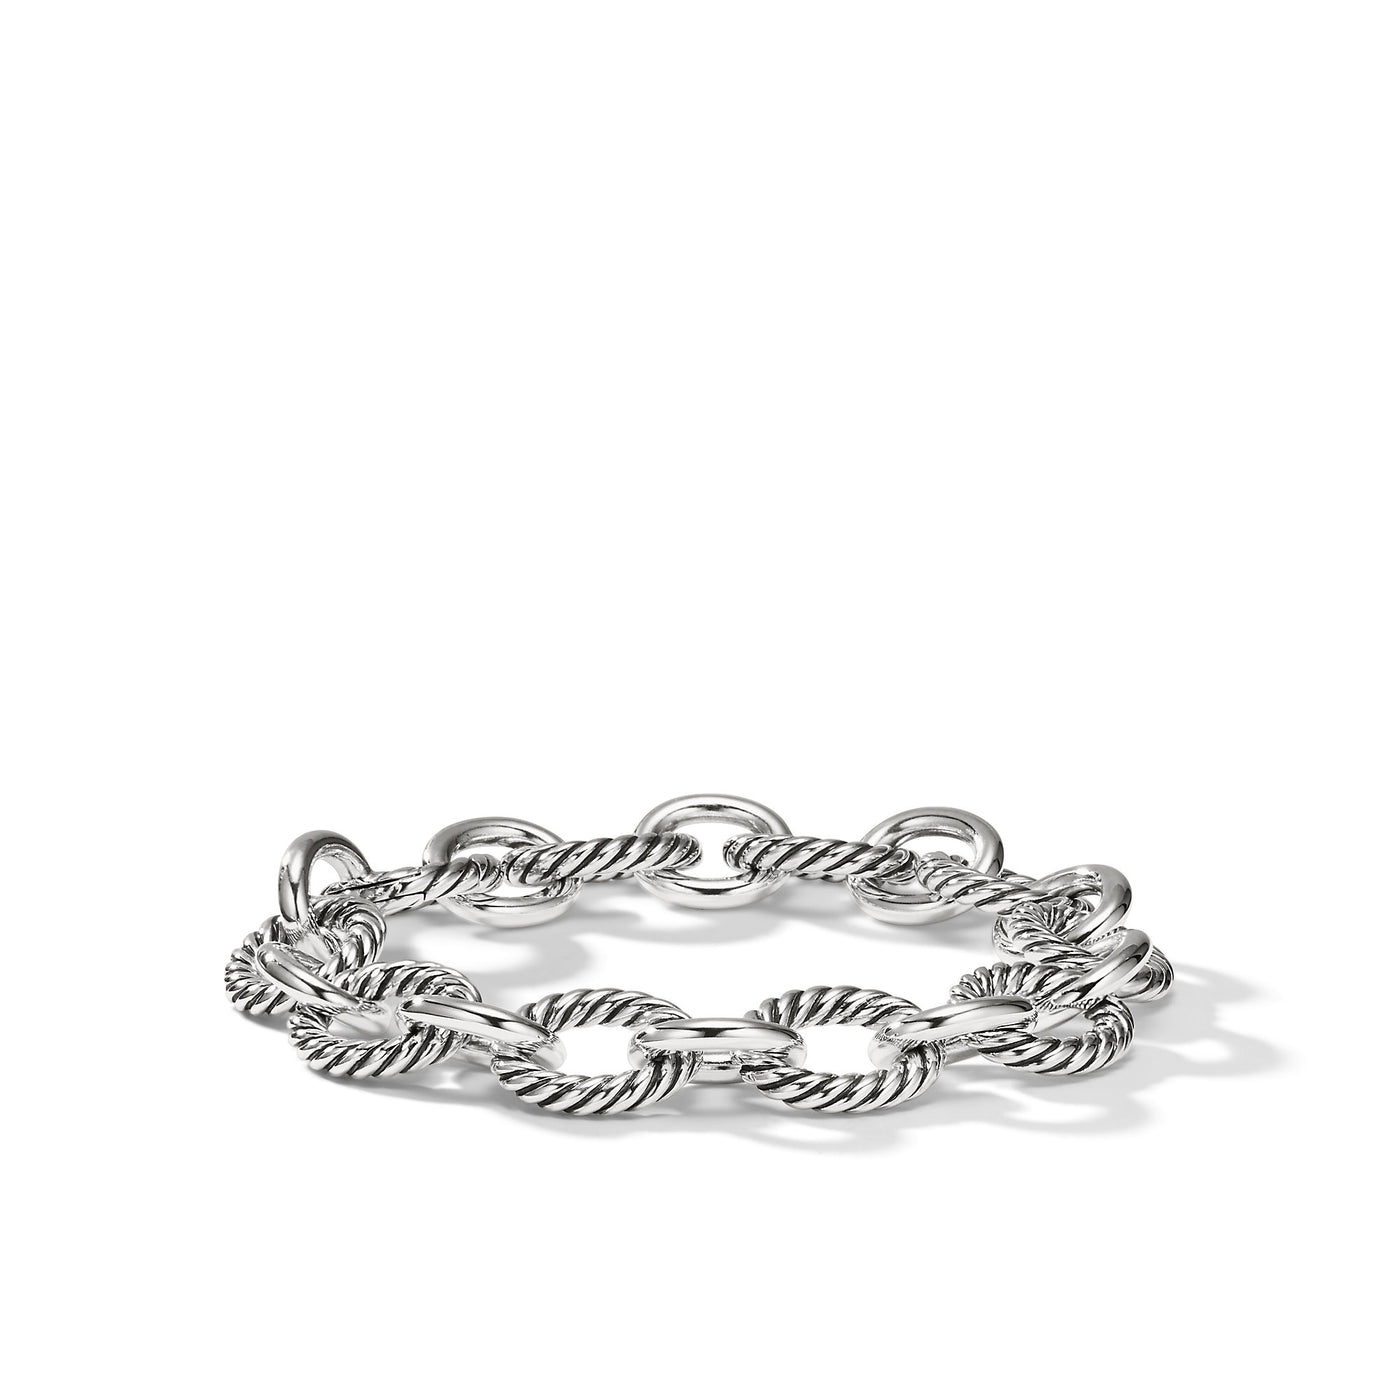 Oval Link Chain Bracelet in Sterling Silver\, 12mm